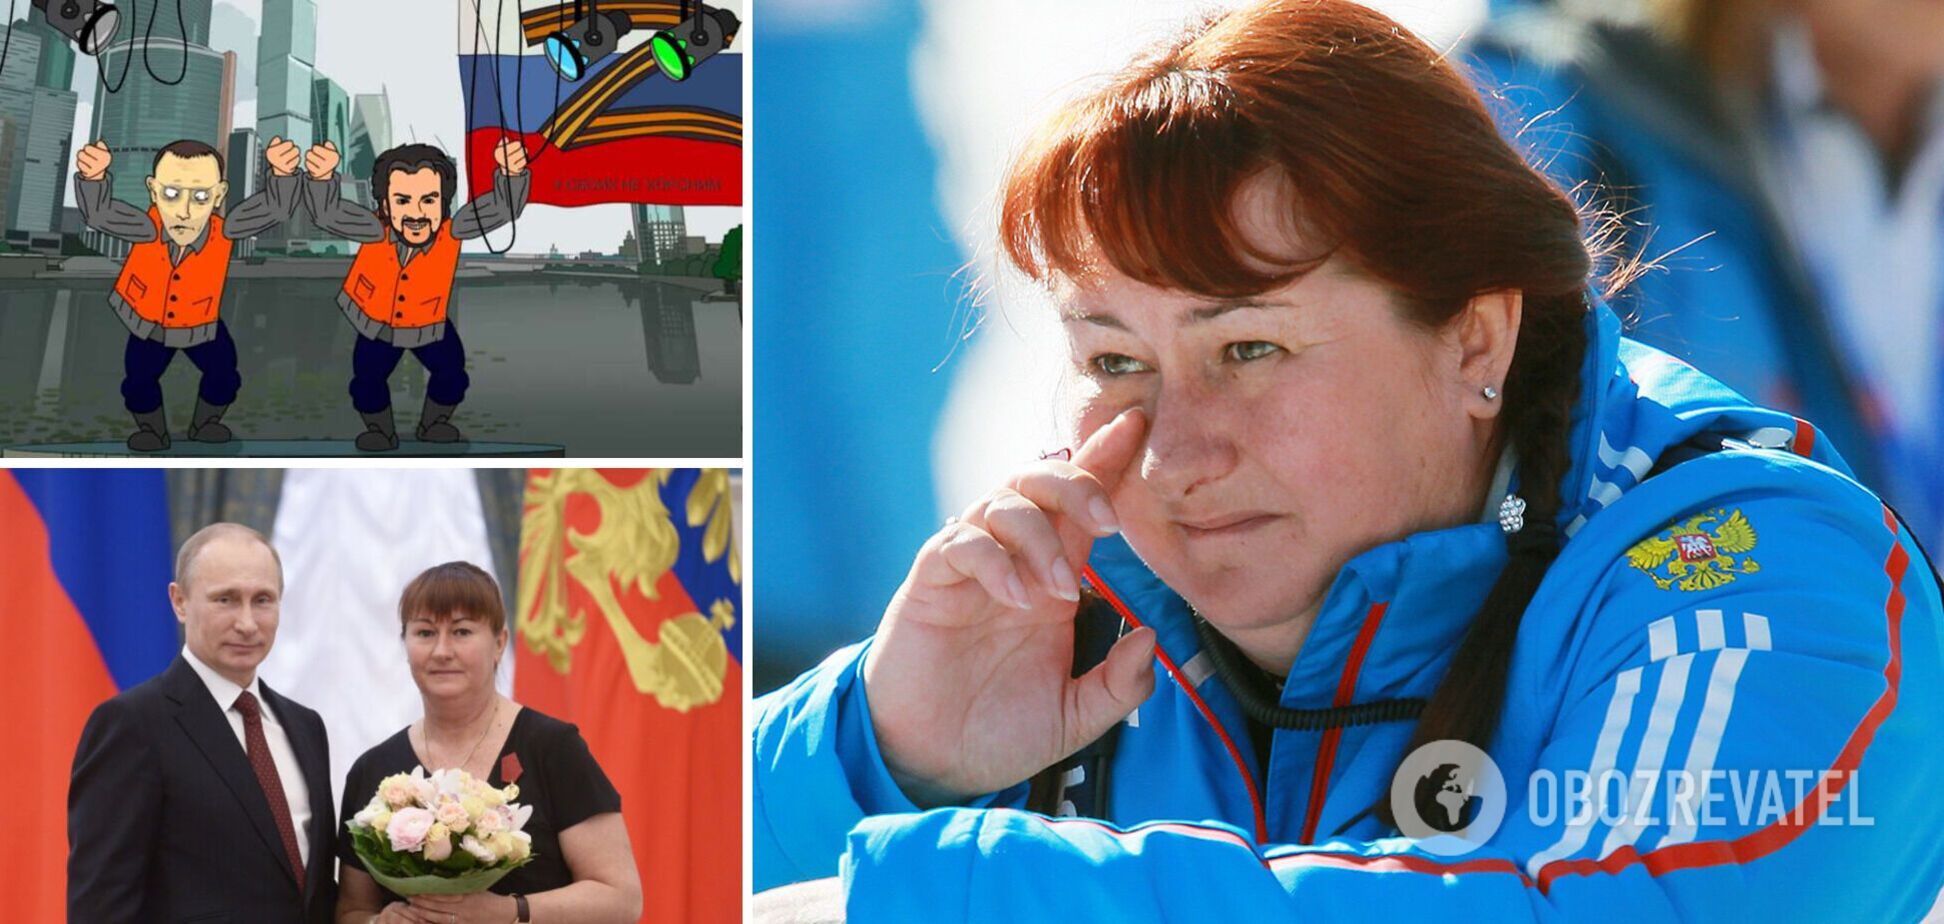 'Рецепт катастрофы': чемпионка ОИ из РФ заявила, что никогда не пойдет против Путина, и получила в ответ